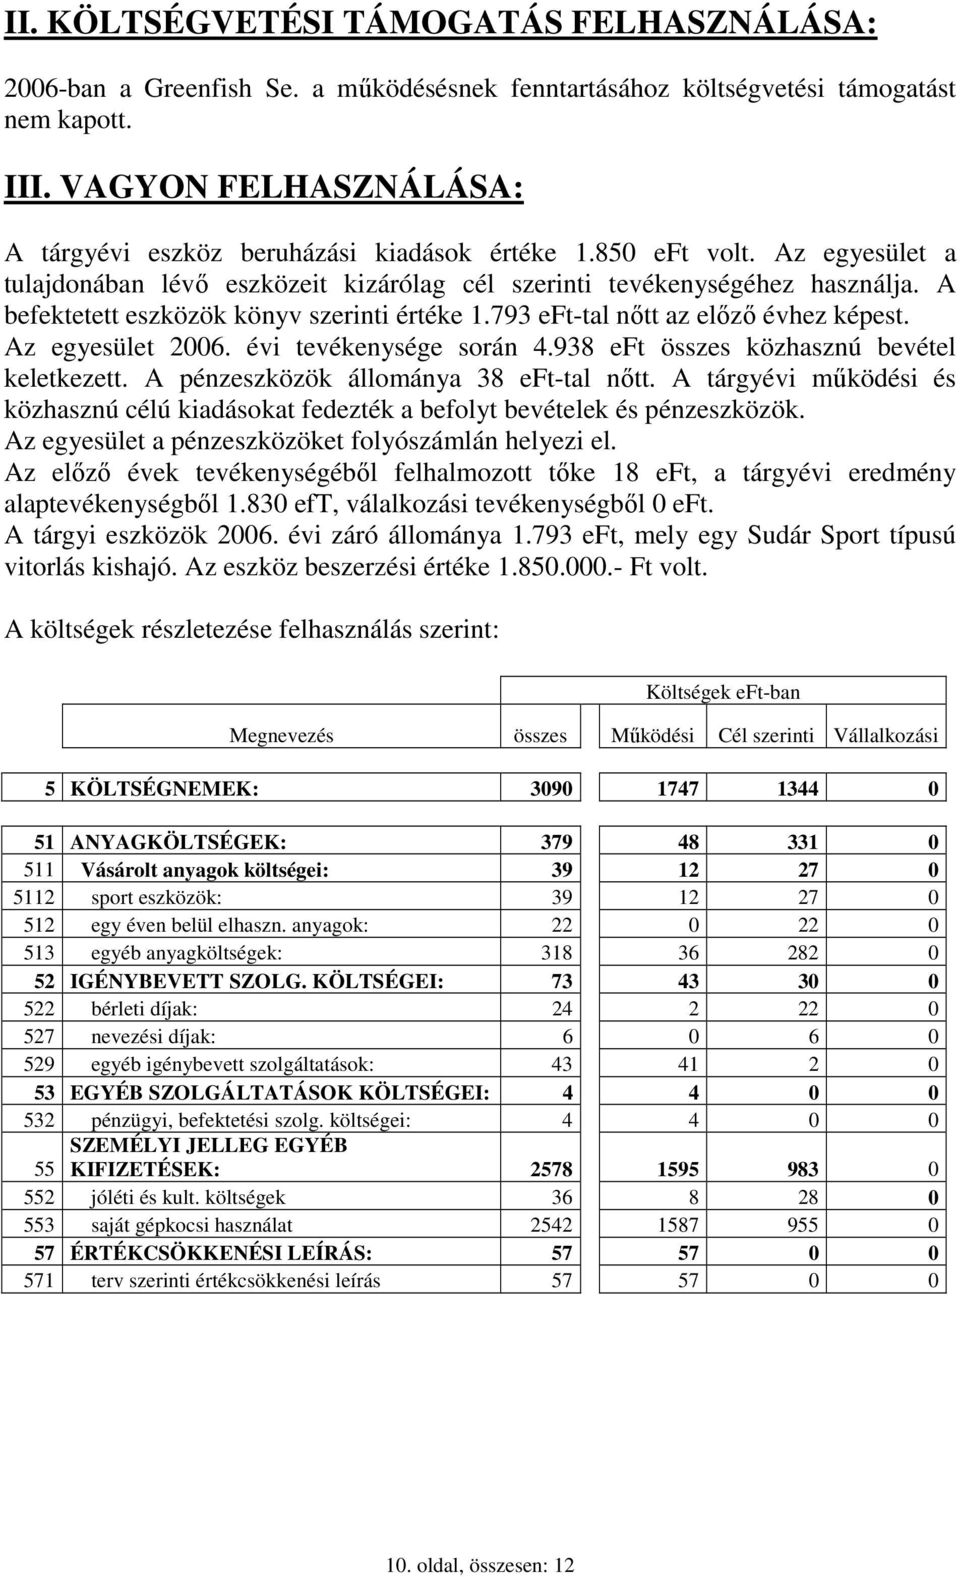 A befektetett eszközök könyv szerinti értéke 1.793 eft-tal nıtt az elızı évhez képest. Az egyesület 2006. évi tevékenysége során 4.938 eft összes közhasznú bevétel keletkezett.